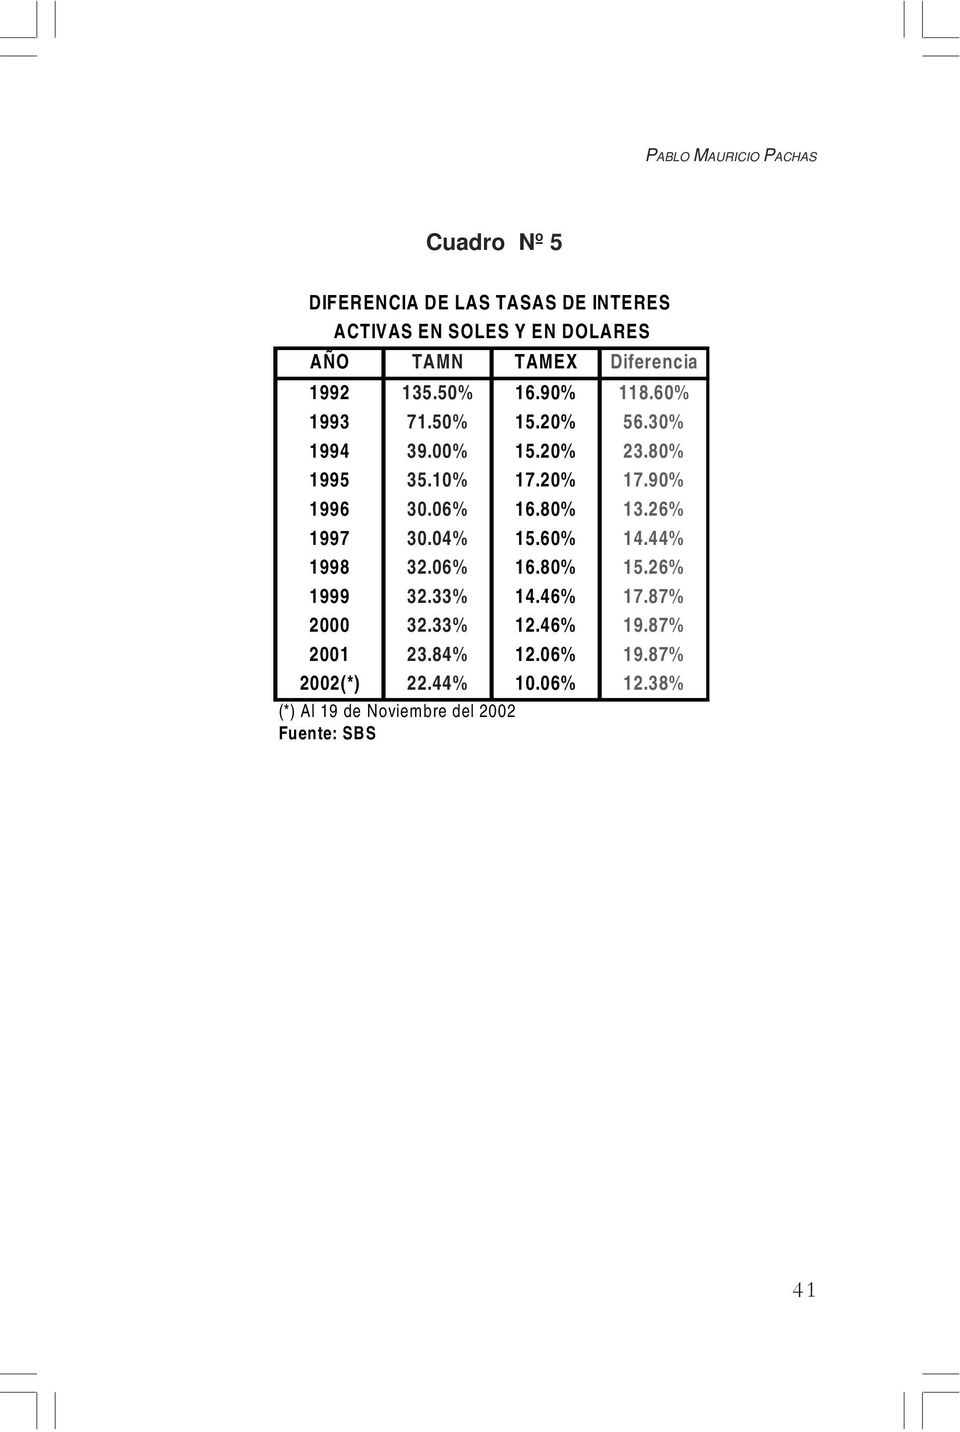 90% 1996 30.06% 16.80% 13.26% 1997 30.04% 15.60% 14.44% 1998 32.06% 16.80% 15.26% 1999 32.33% 14.46% 17.87% 2000 32.